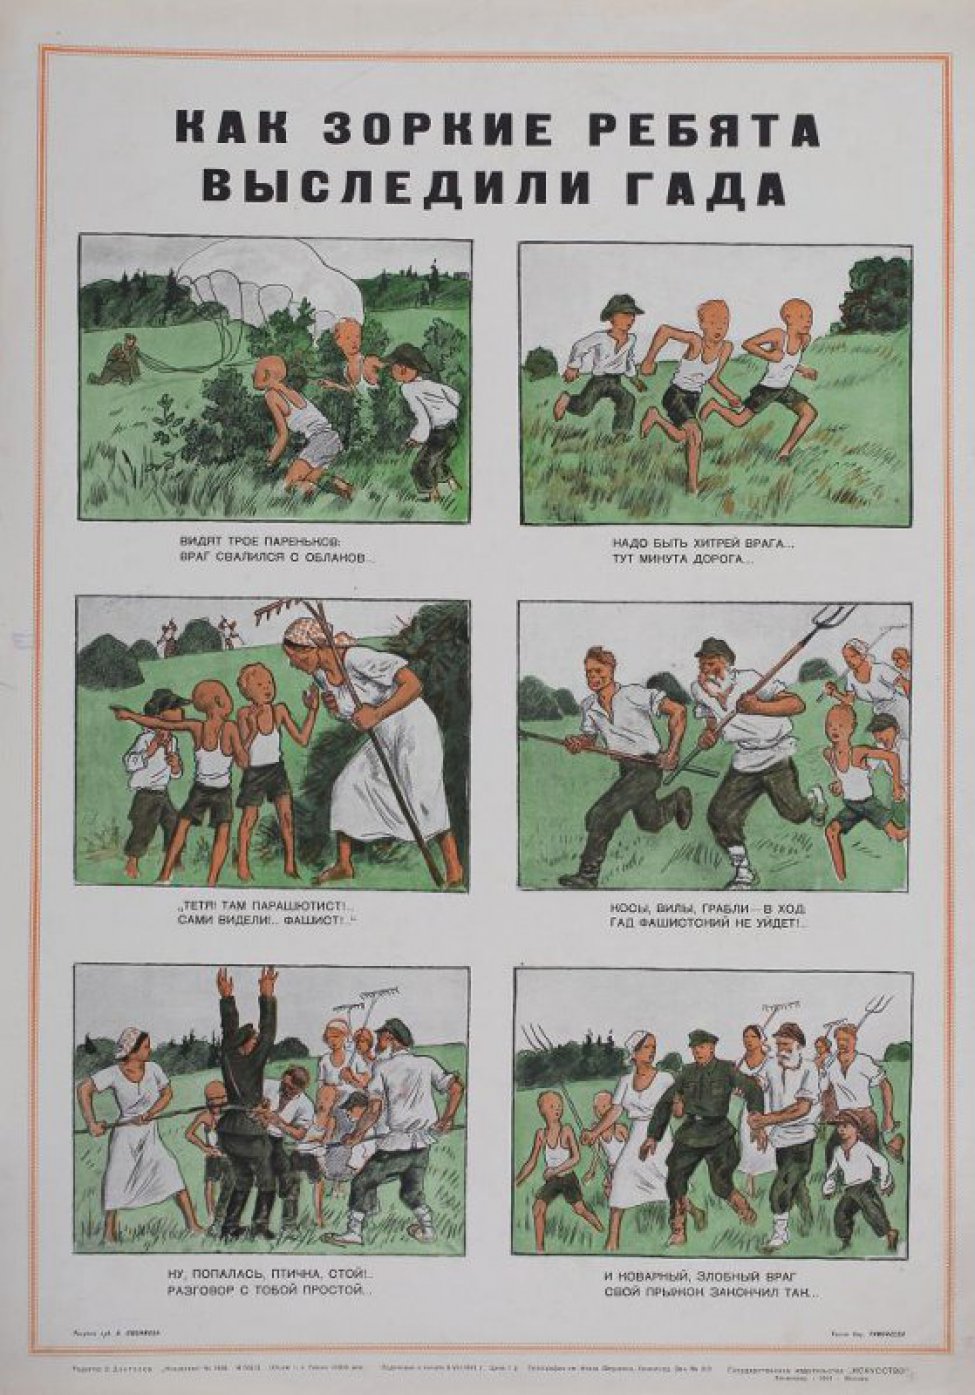 Изображены на шести рисунках мальчики и крестьяне за немецкого диверсанта-парашютиста. Под каждым рисунком текст: "Видят... закончил так".